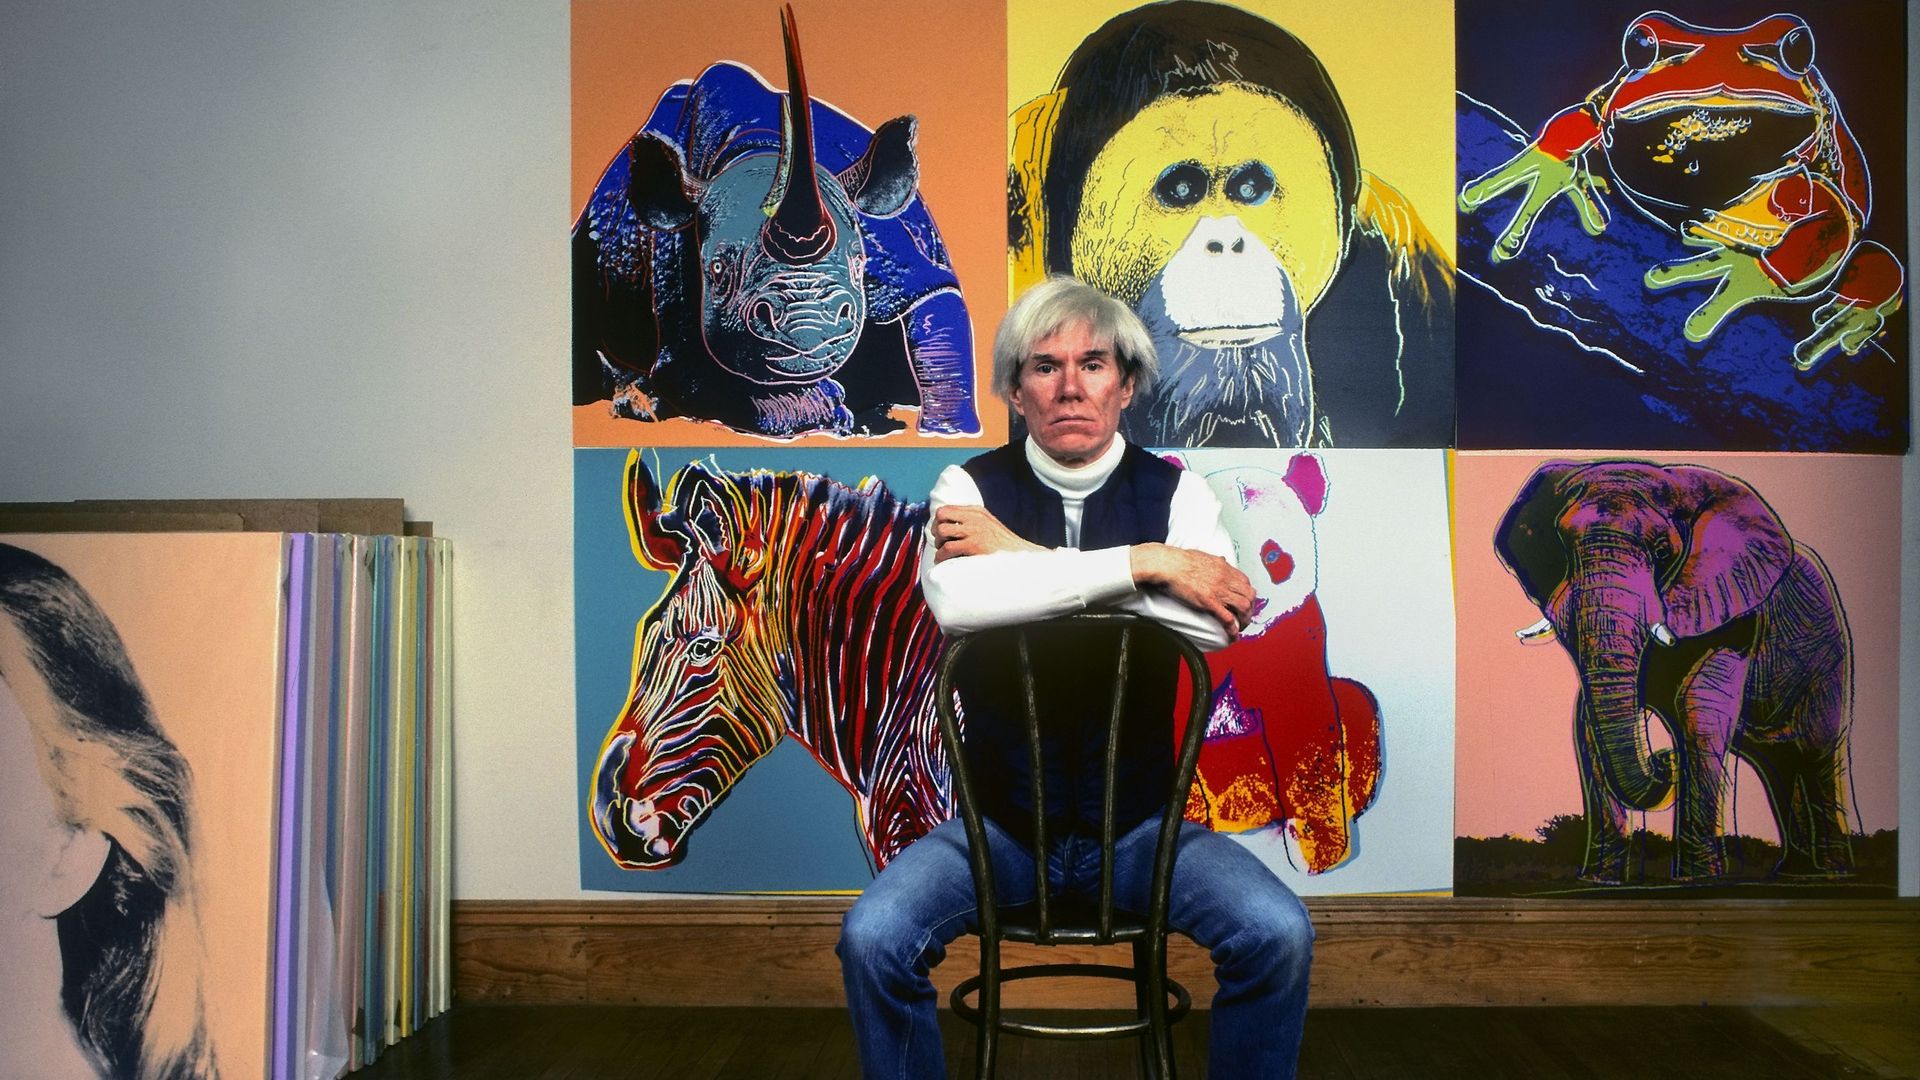 L’artiste pop américain Andy Warhol est assis devant plusieurs tableaux de son exposition "Espèces menacées" dans son studio, la Factory, à Union Square, New York, New York, le 12 avril 1983.